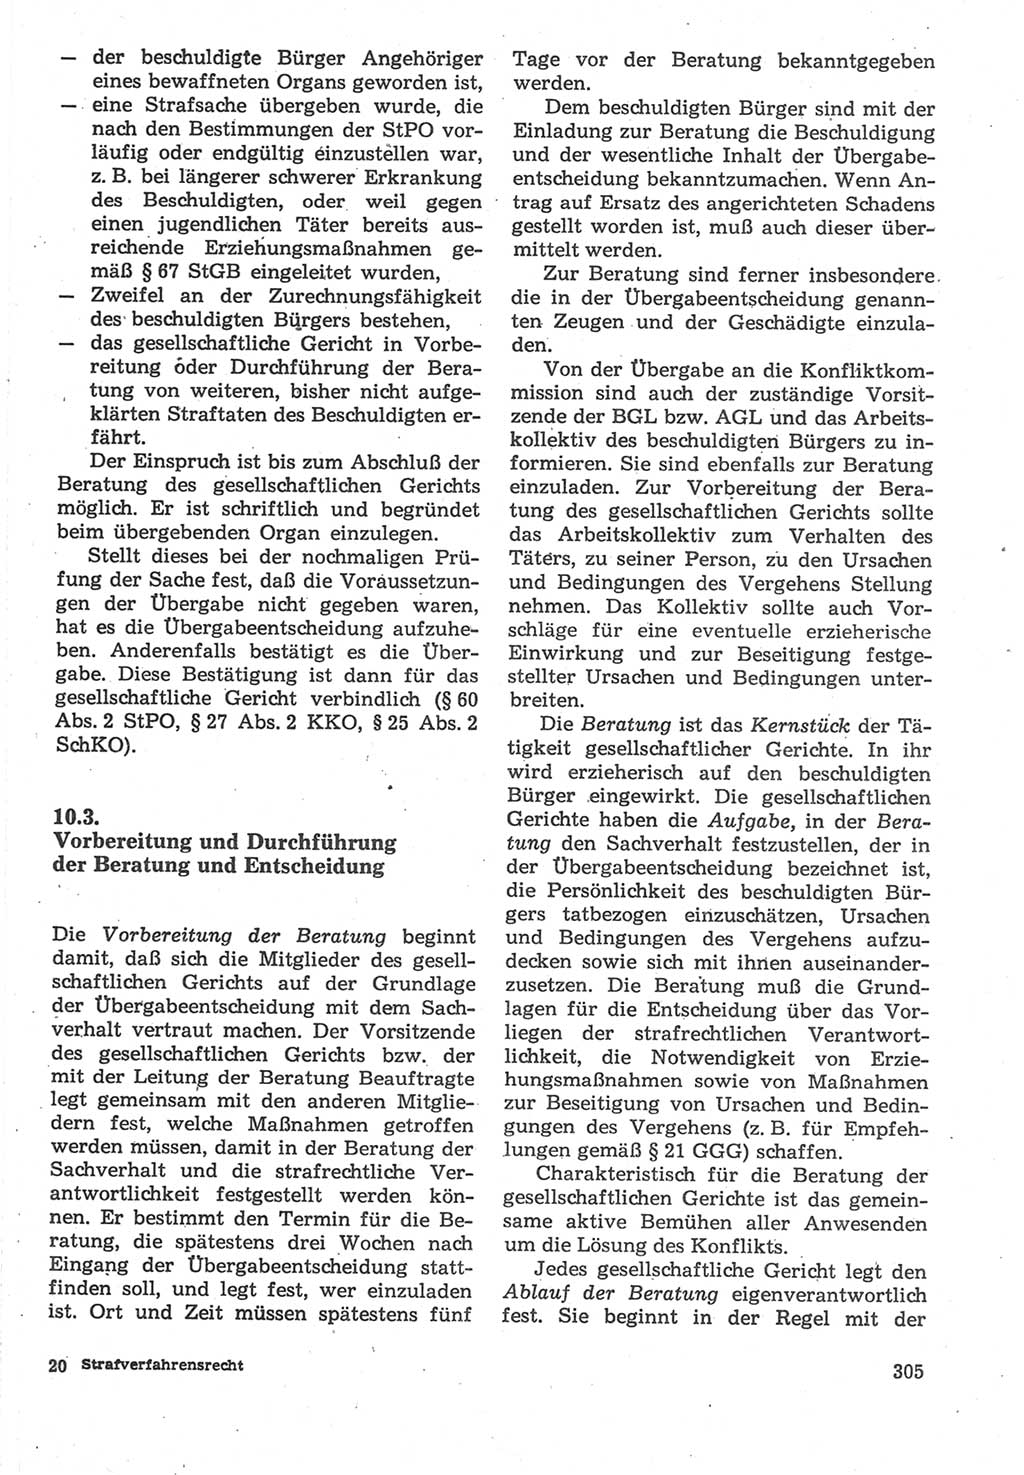 Strafverfahrensrecht [Deutsche Demokratische Republik (DDR)], Lehrbuch 1987, Seite 305 (Strafverf.-R. DDR Lb. 1987, S. 305)